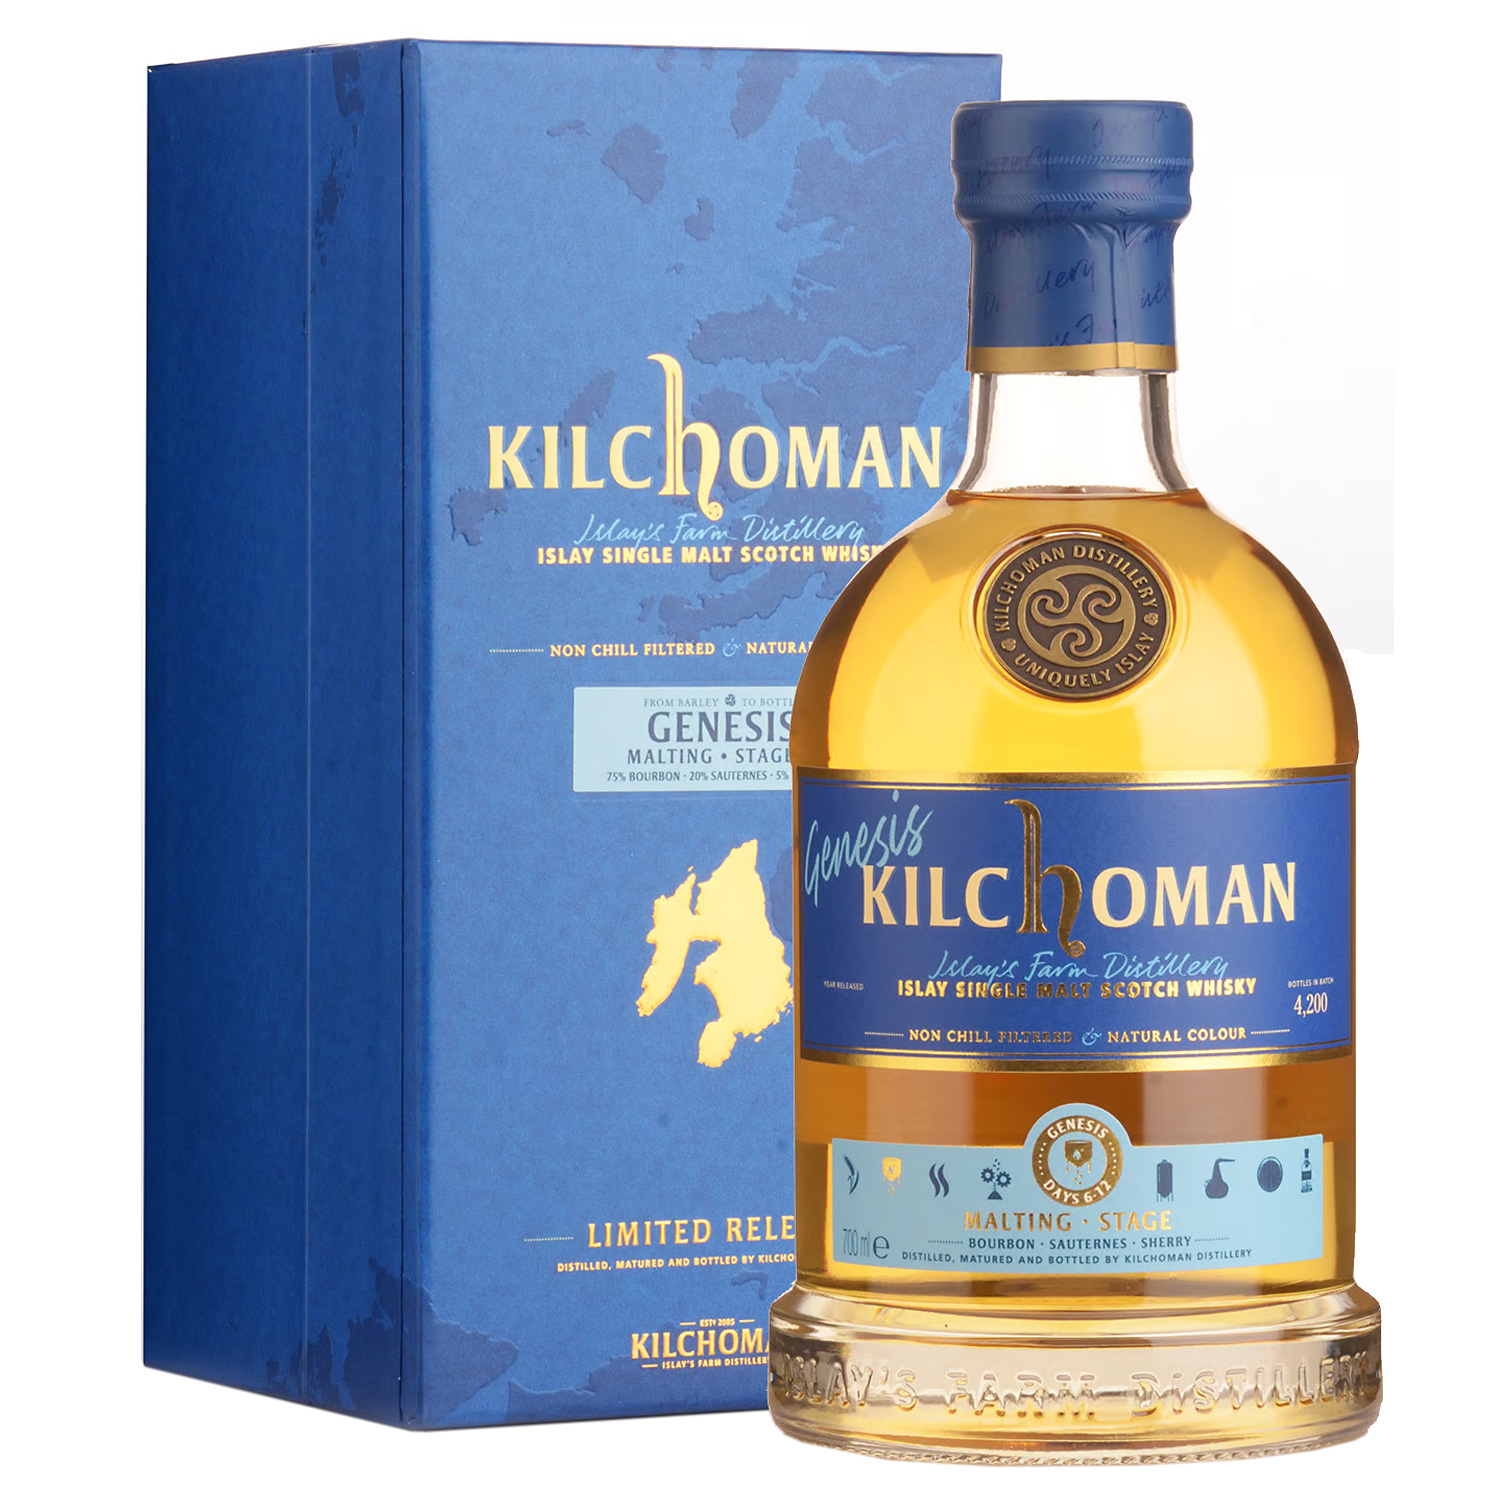 Kilchoman Genesis Harvest Stage 3 Islay Single Malt Scotch Whisky